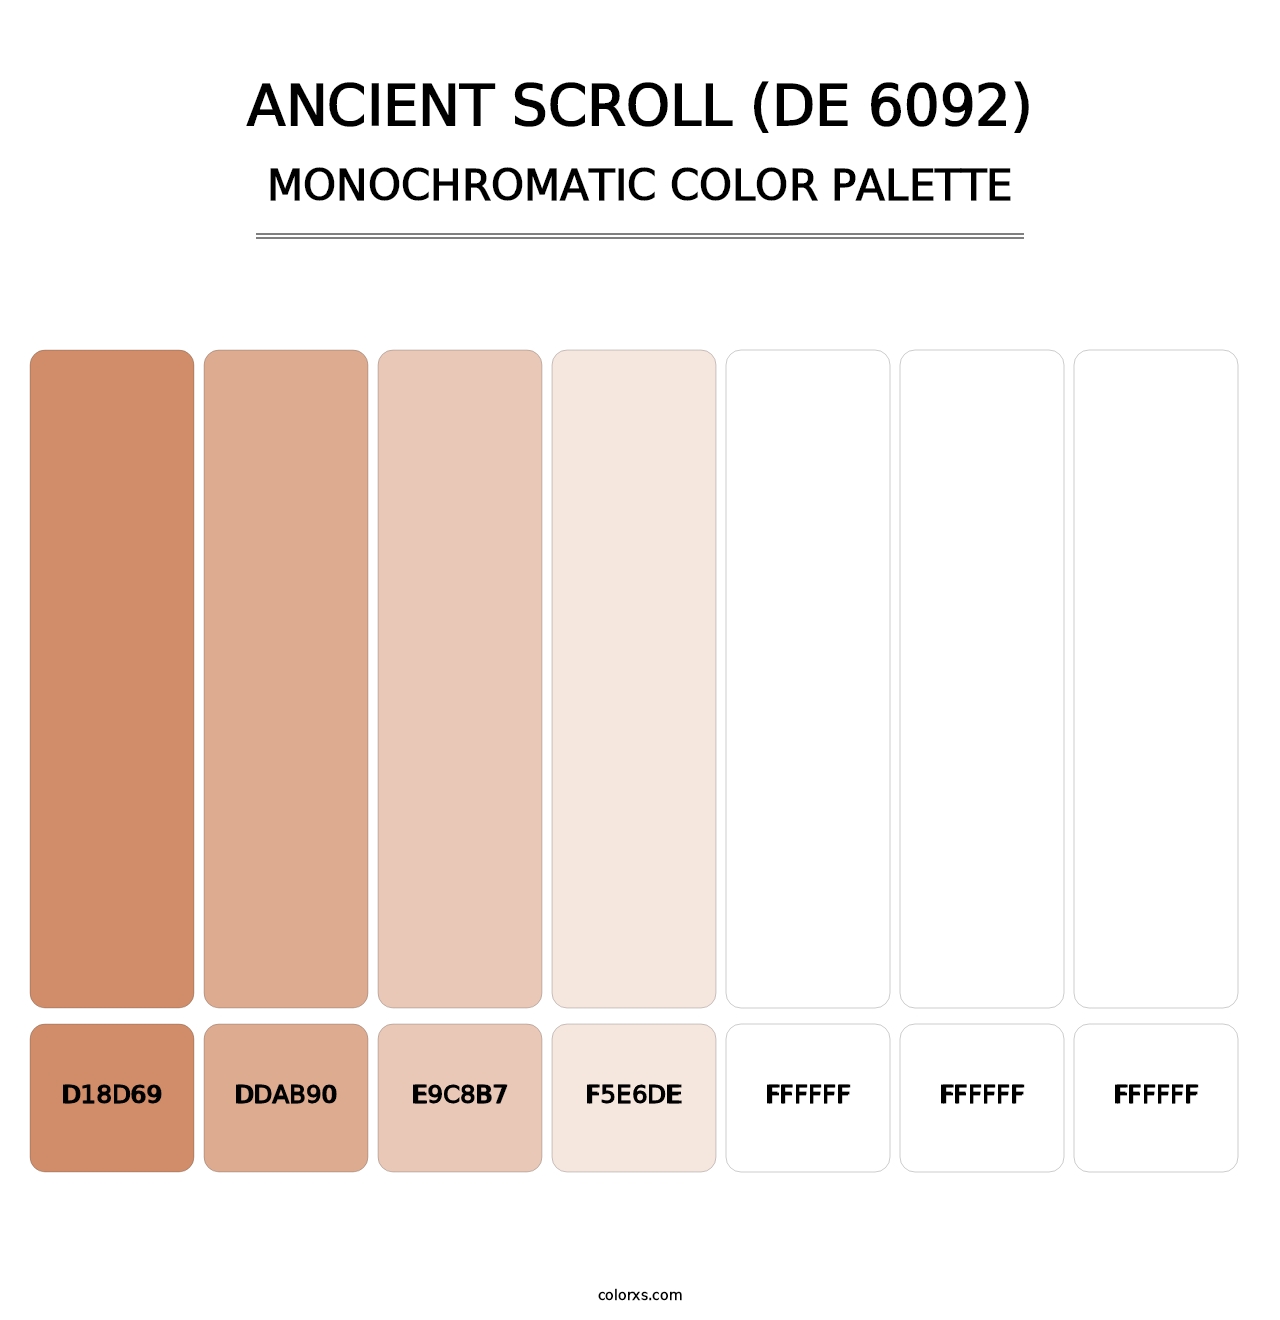 Ancient Scroll (DE 6092) - Monochromatic Color Palette